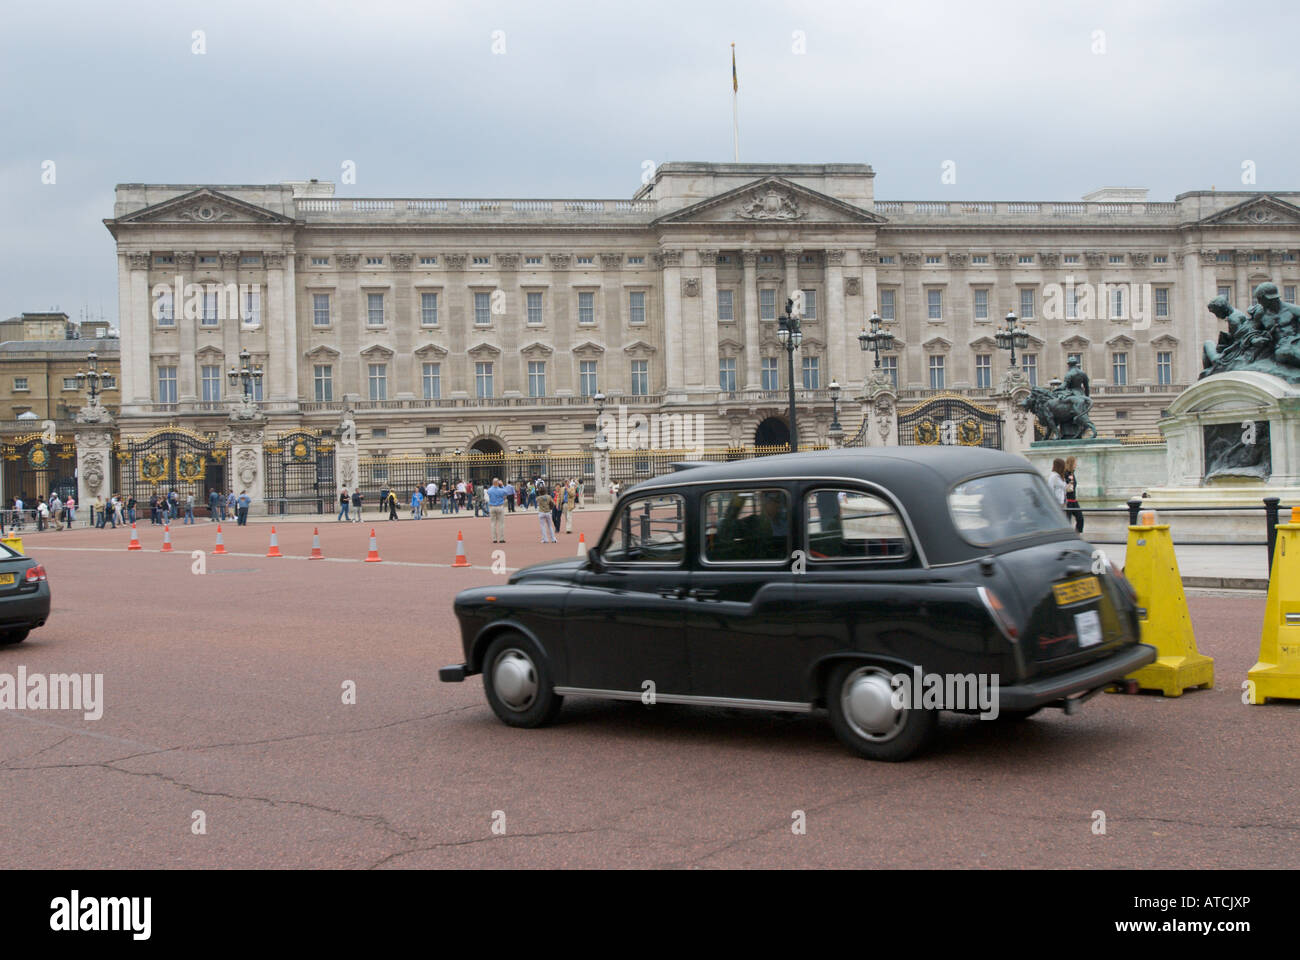 A black cab speeds past Buckingham Palace UK Stock Photo